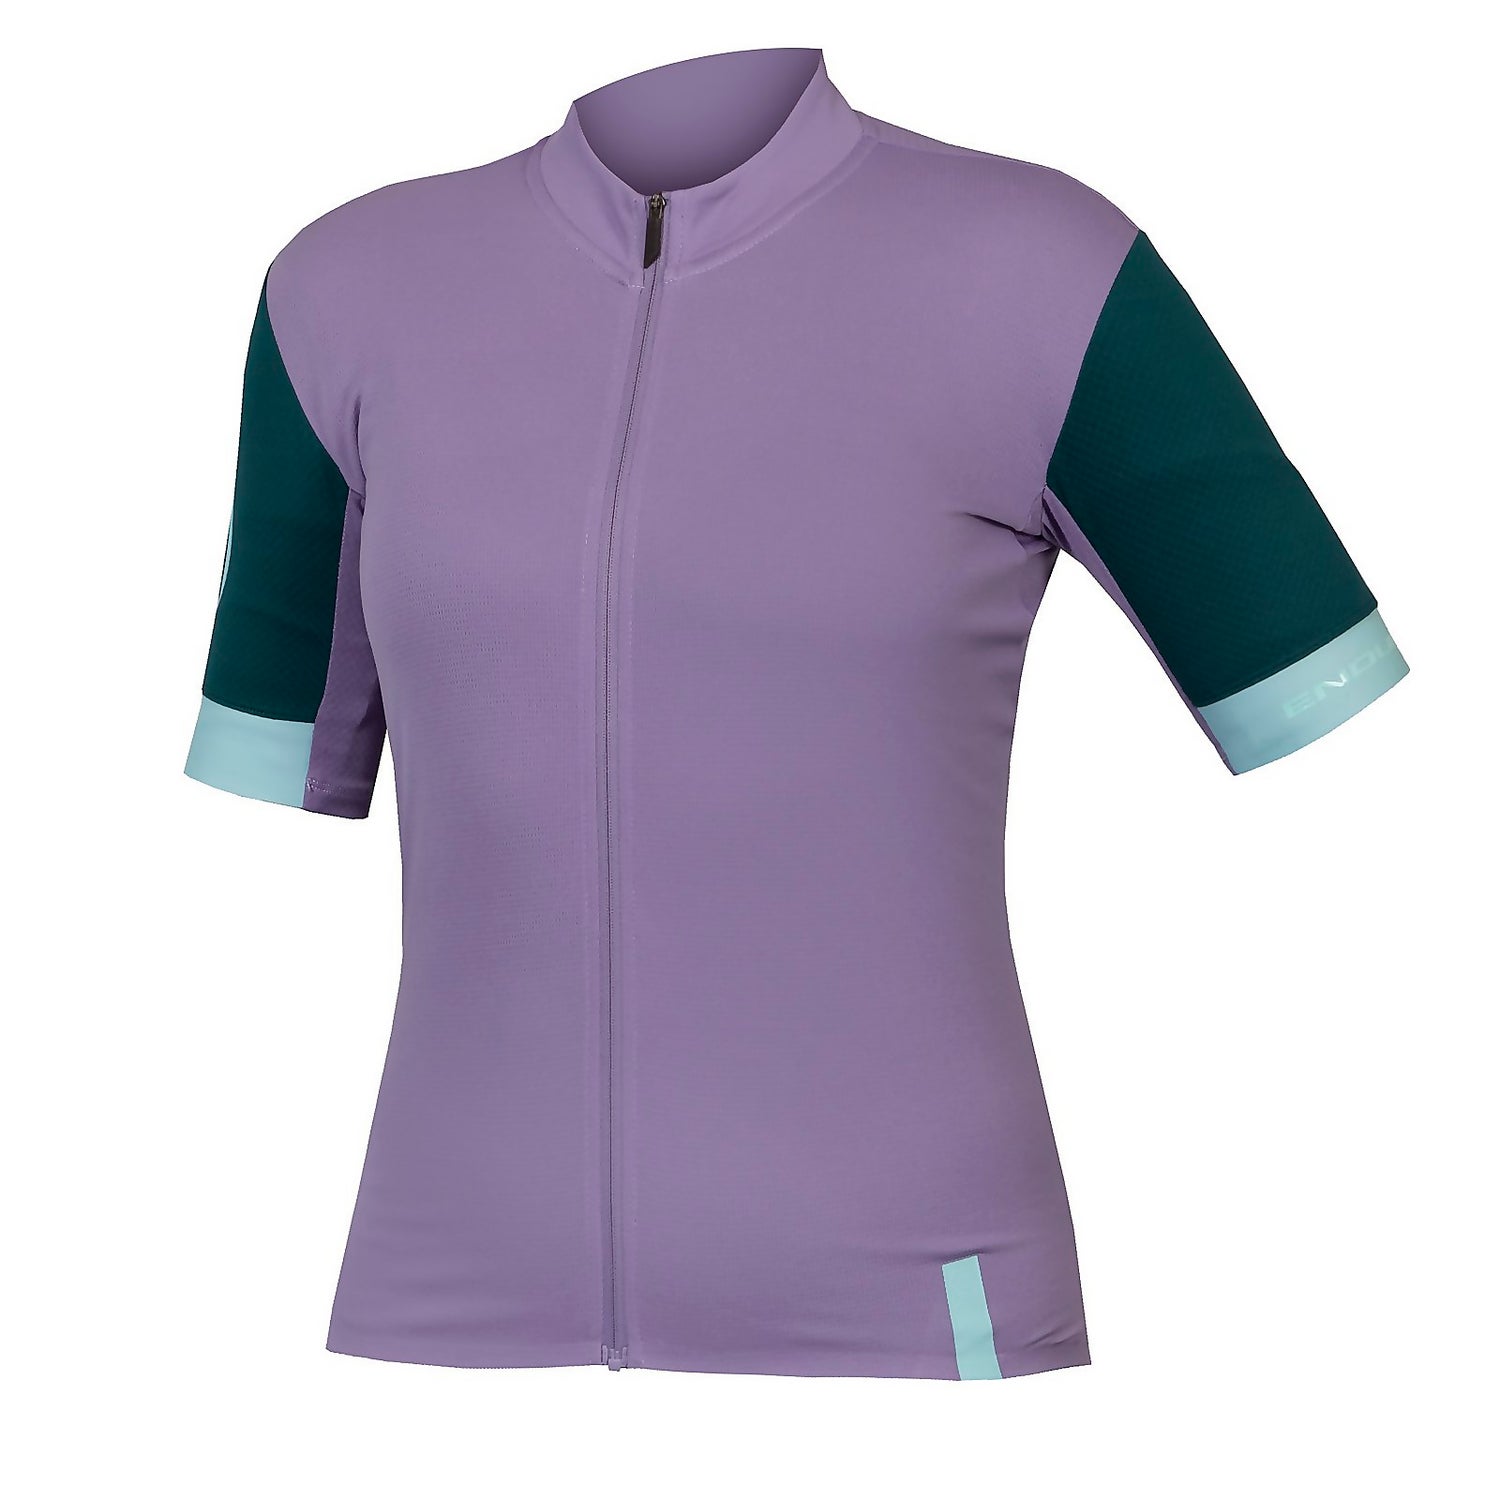 Women's FS260 S/S Jersey - Purple - XL